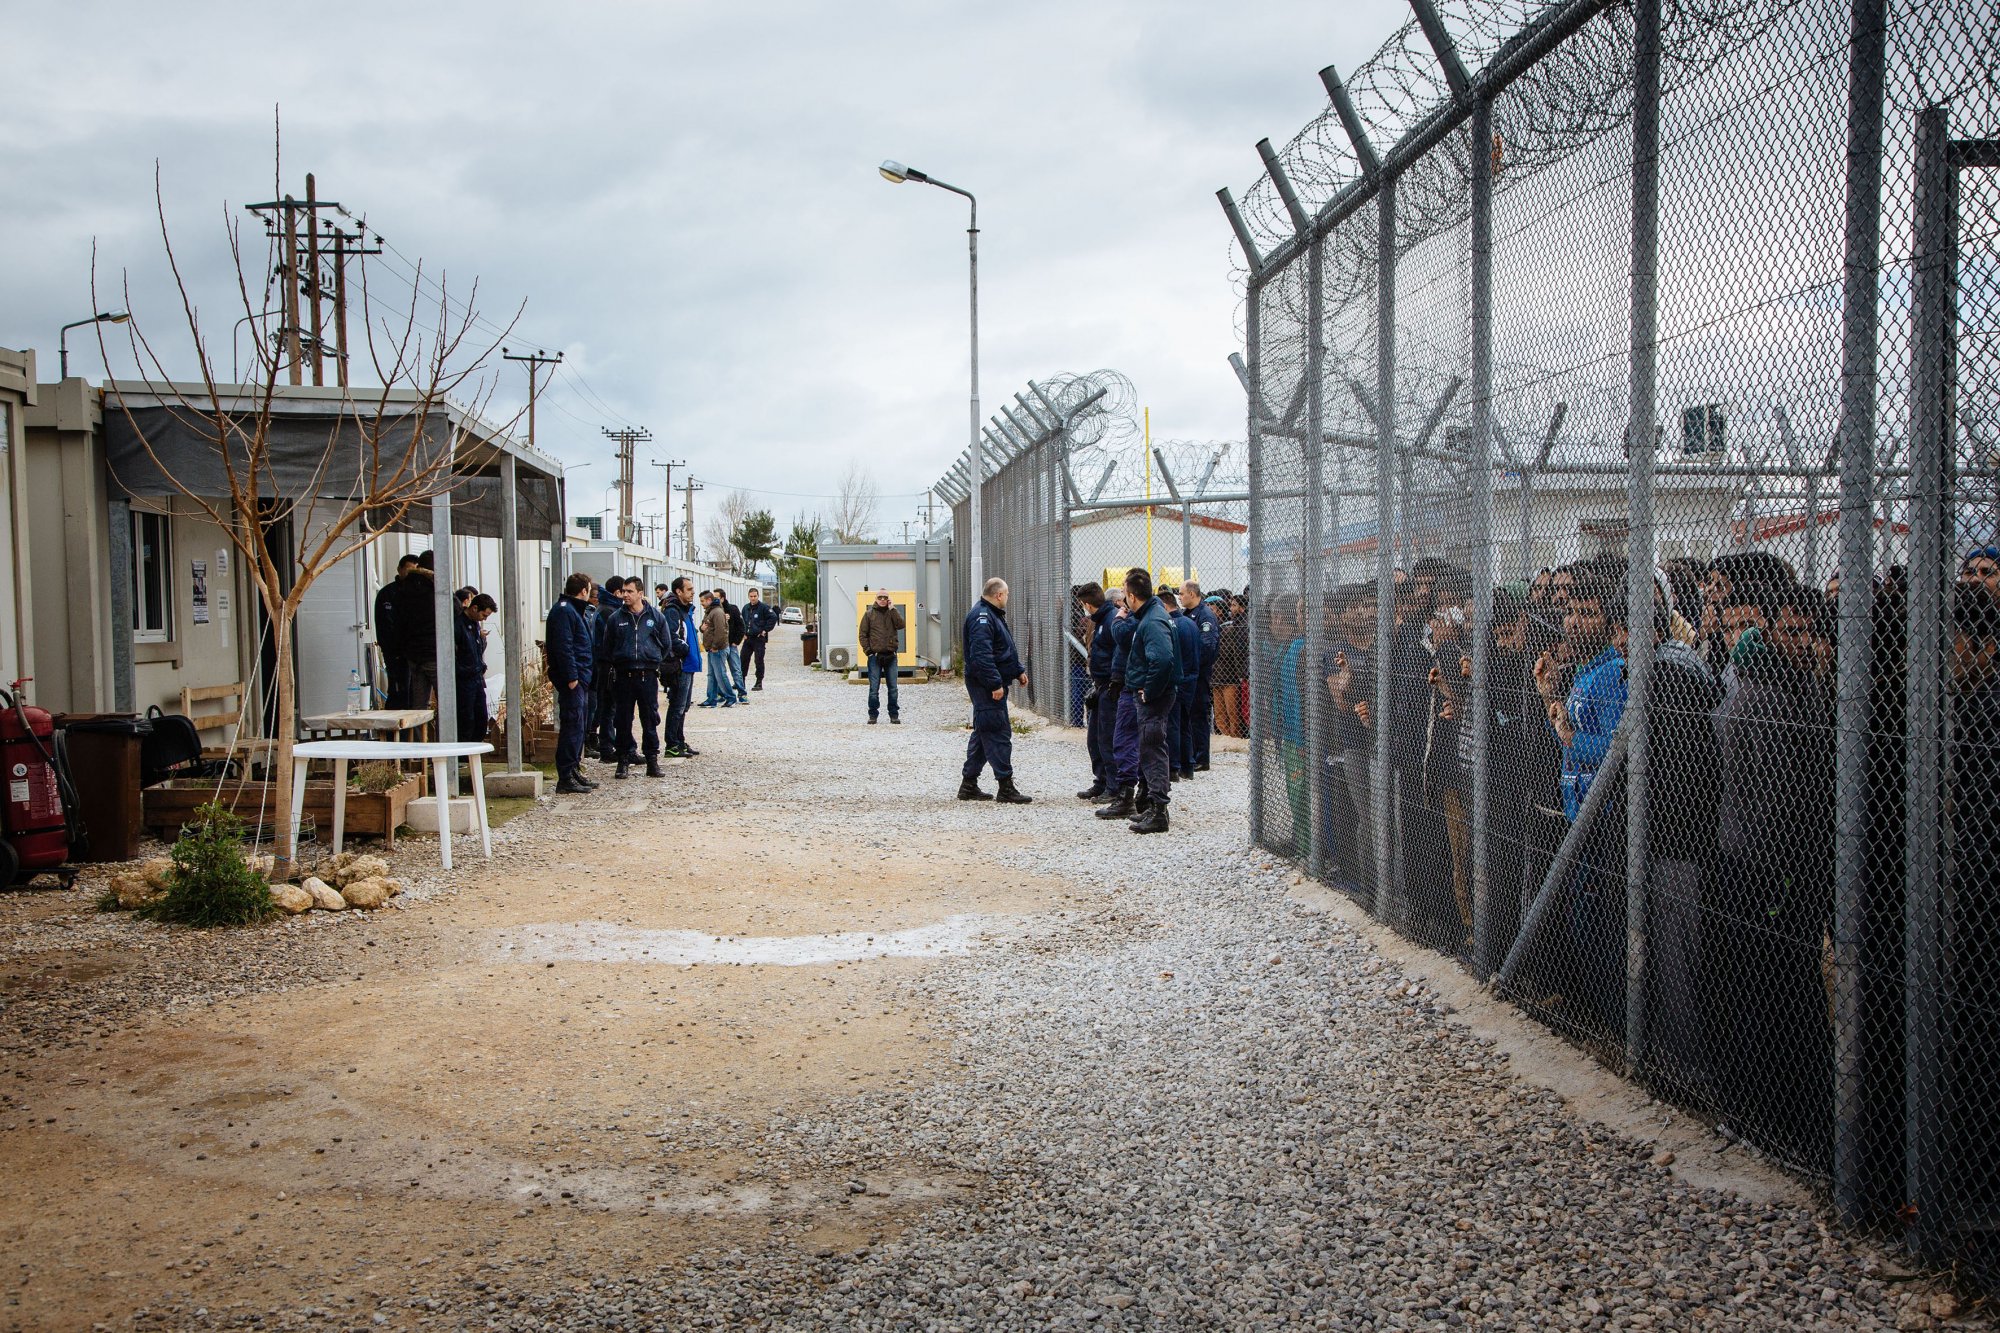 Επεισόδια στο κέντρο κράτησης μεταναστών στην Αμυγδαλέζα - Δύο σοβαρά τραυματίες